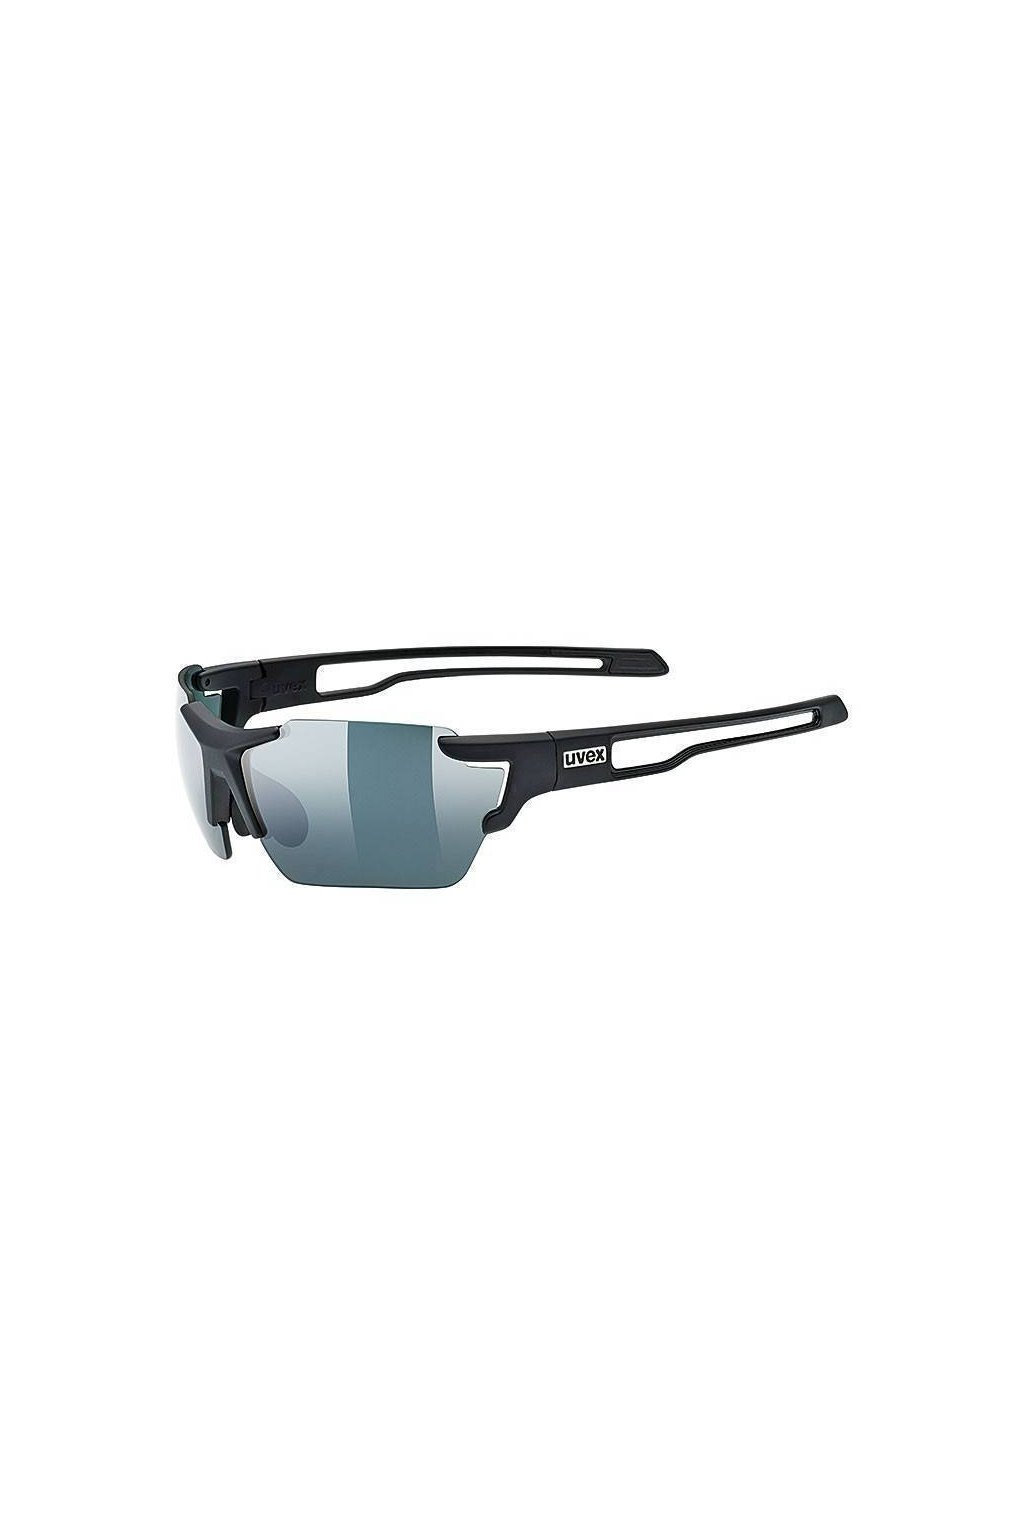 Cyklistické sluneční brýle UVEX SPORTSTYLE 803 SMALL CV (ColorVision), BLACK MAT